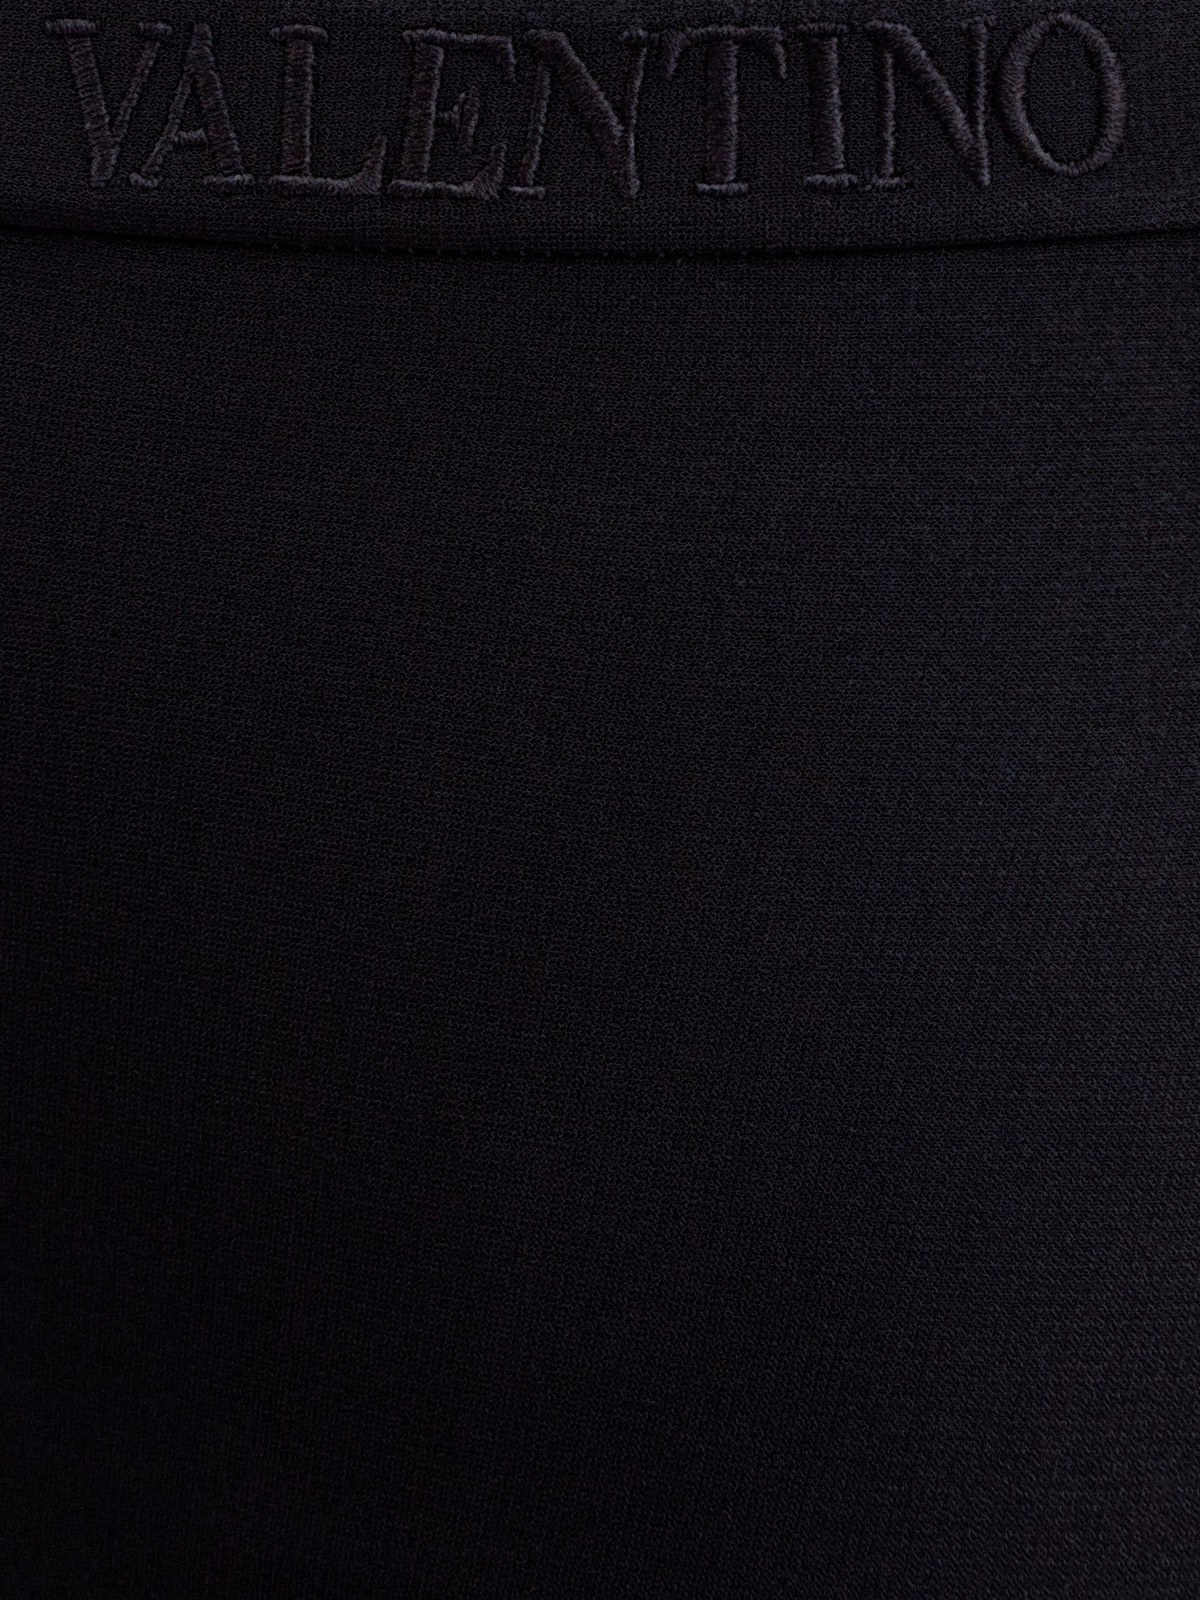 Леггинсы из эластичной вискозы с вышитым логотипом VALENTINO, цвет черный, размер 40;42;38;44 - фото 5